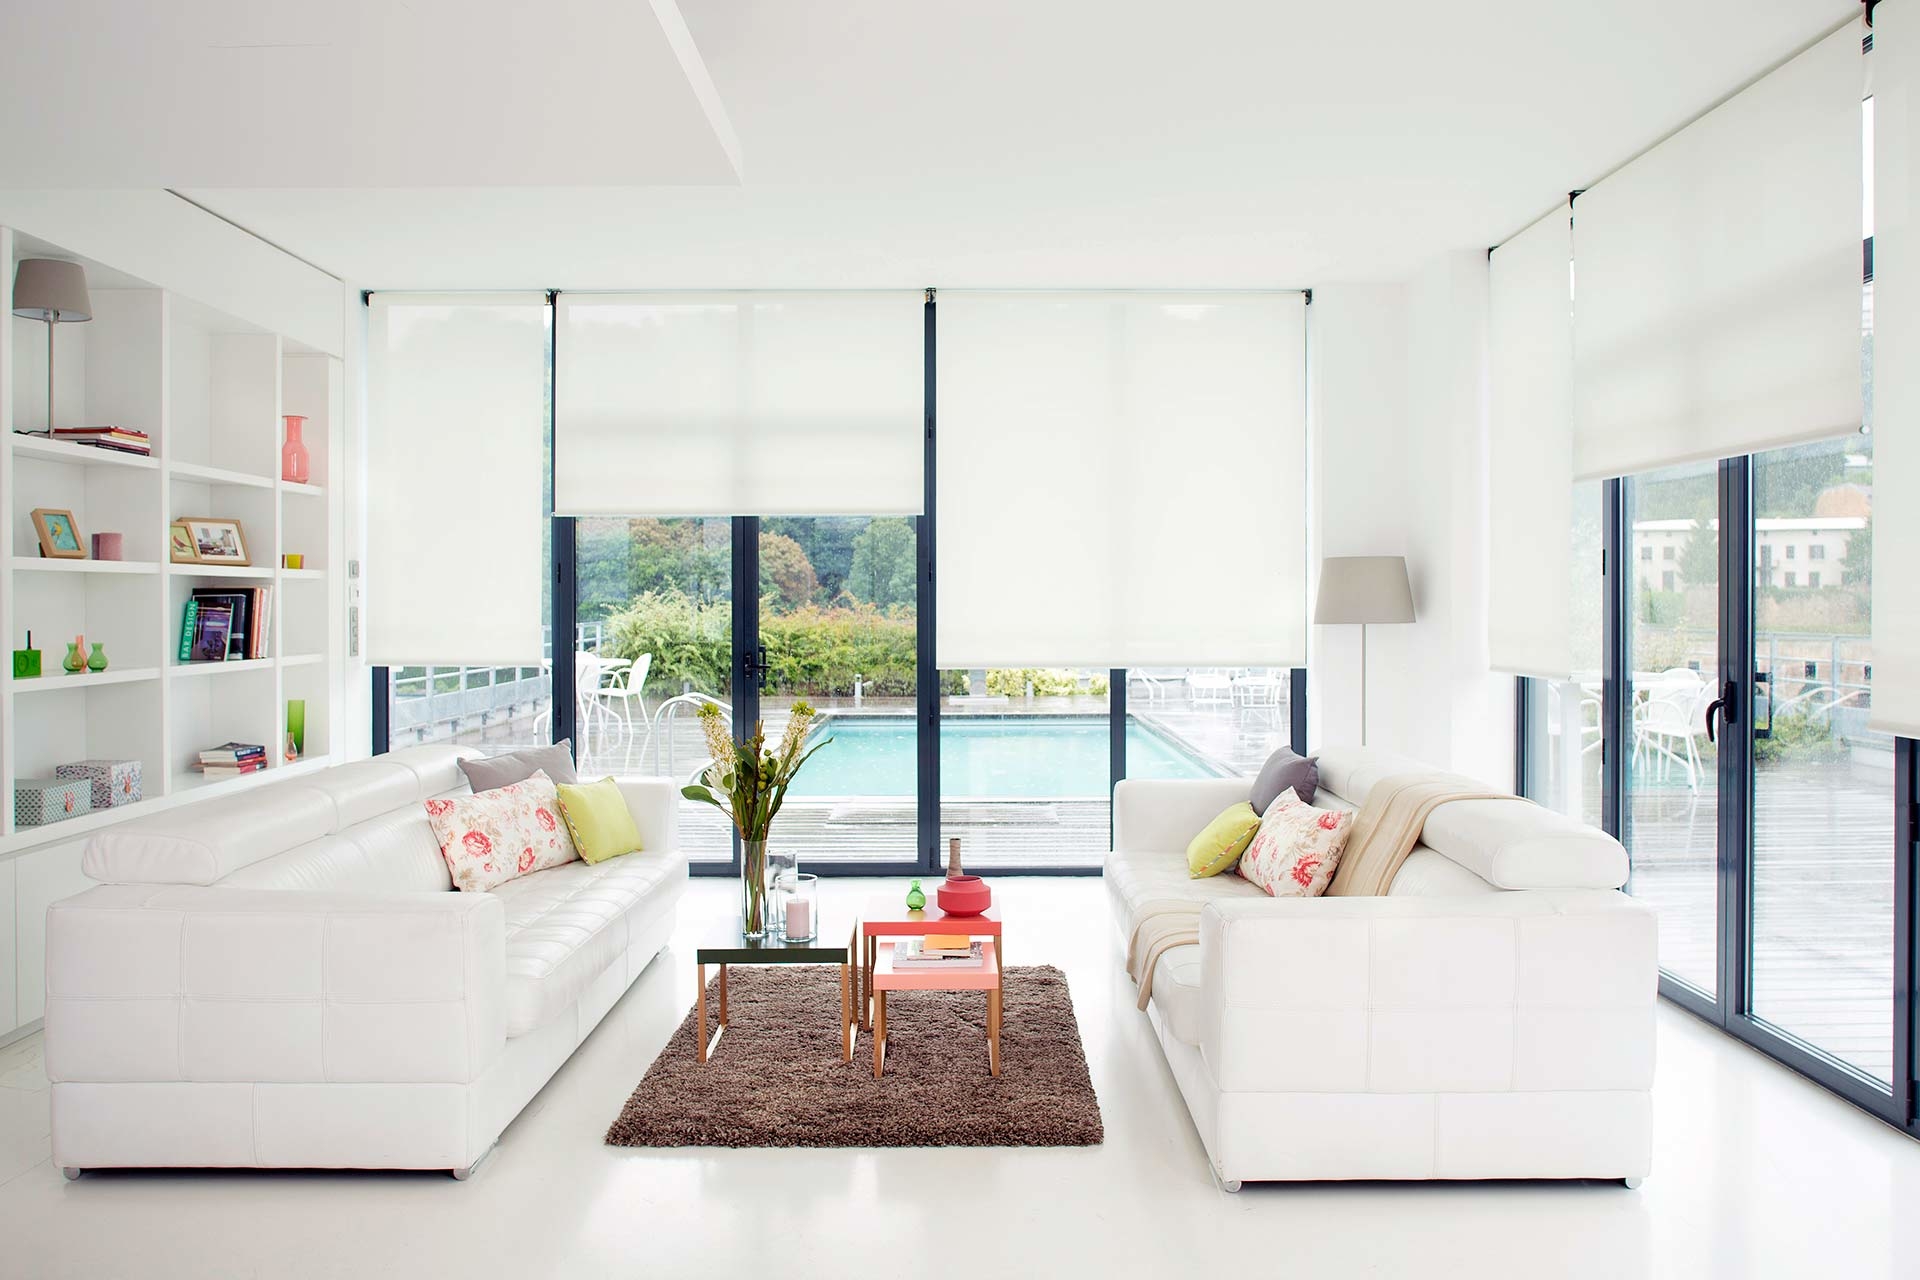 Rèm chống nắng tạo nên không gian nội thất hoàn hảo